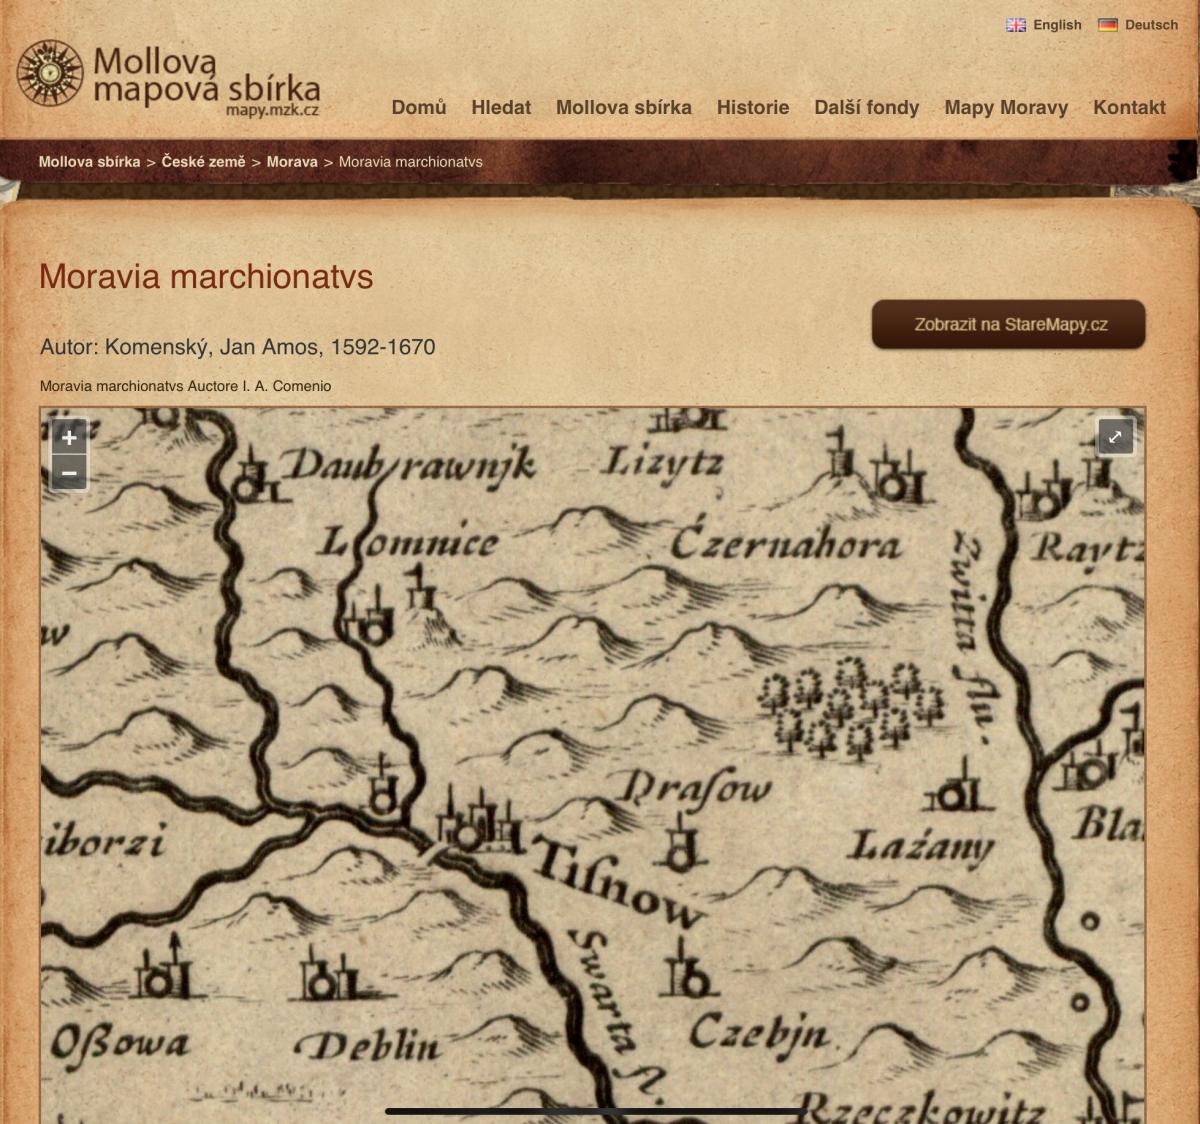 Komenského mapa Moravy z roku 1592-1670. Tok dnešního Besénku je patrný, název ale není uveden. 